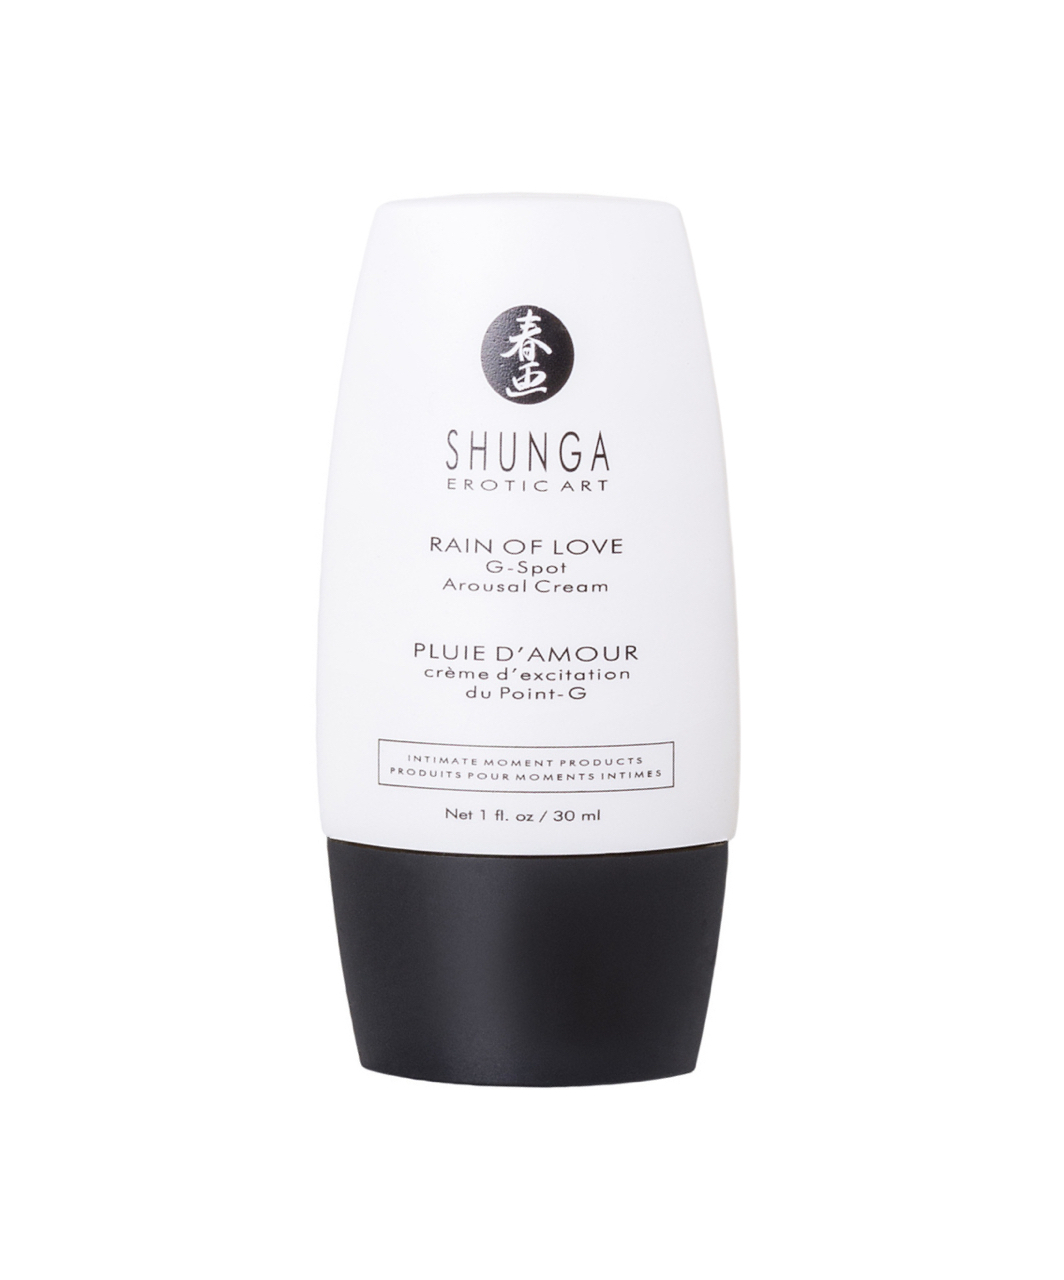 Shunga Rain of Love G-spot Arousal Cream (30 ml)